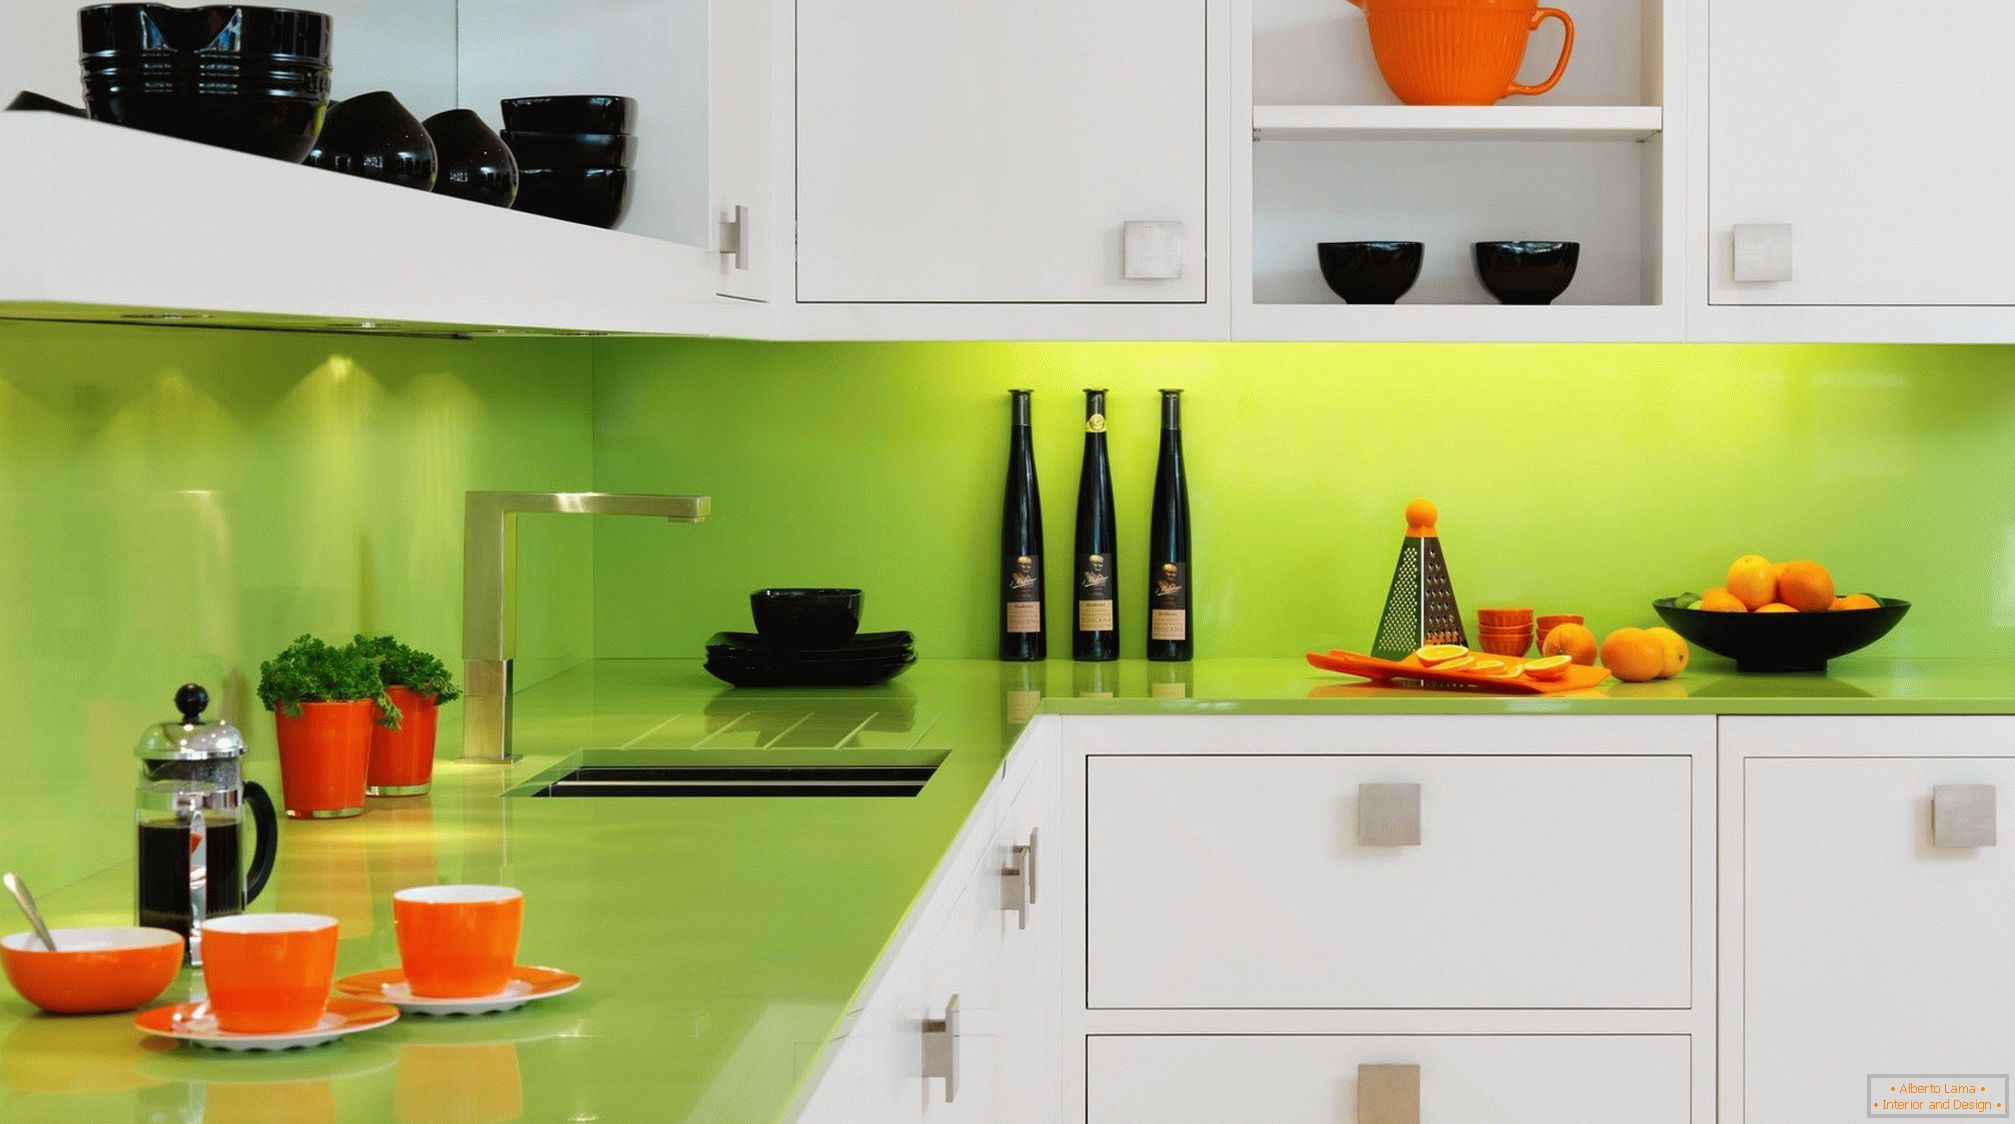 Наранџаста и црна јела у белој зеленој кухињи